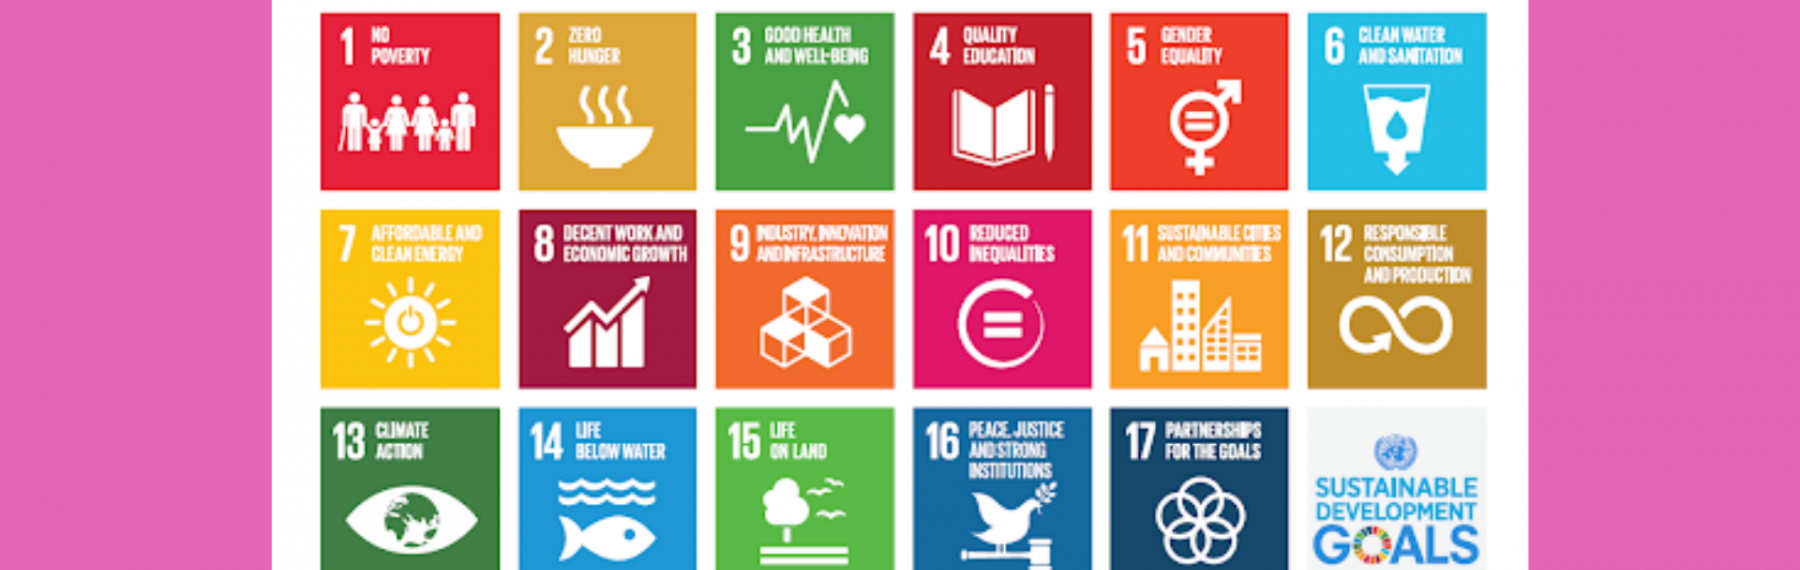 Les 17 objectifs Développement durable de l'UNESCO